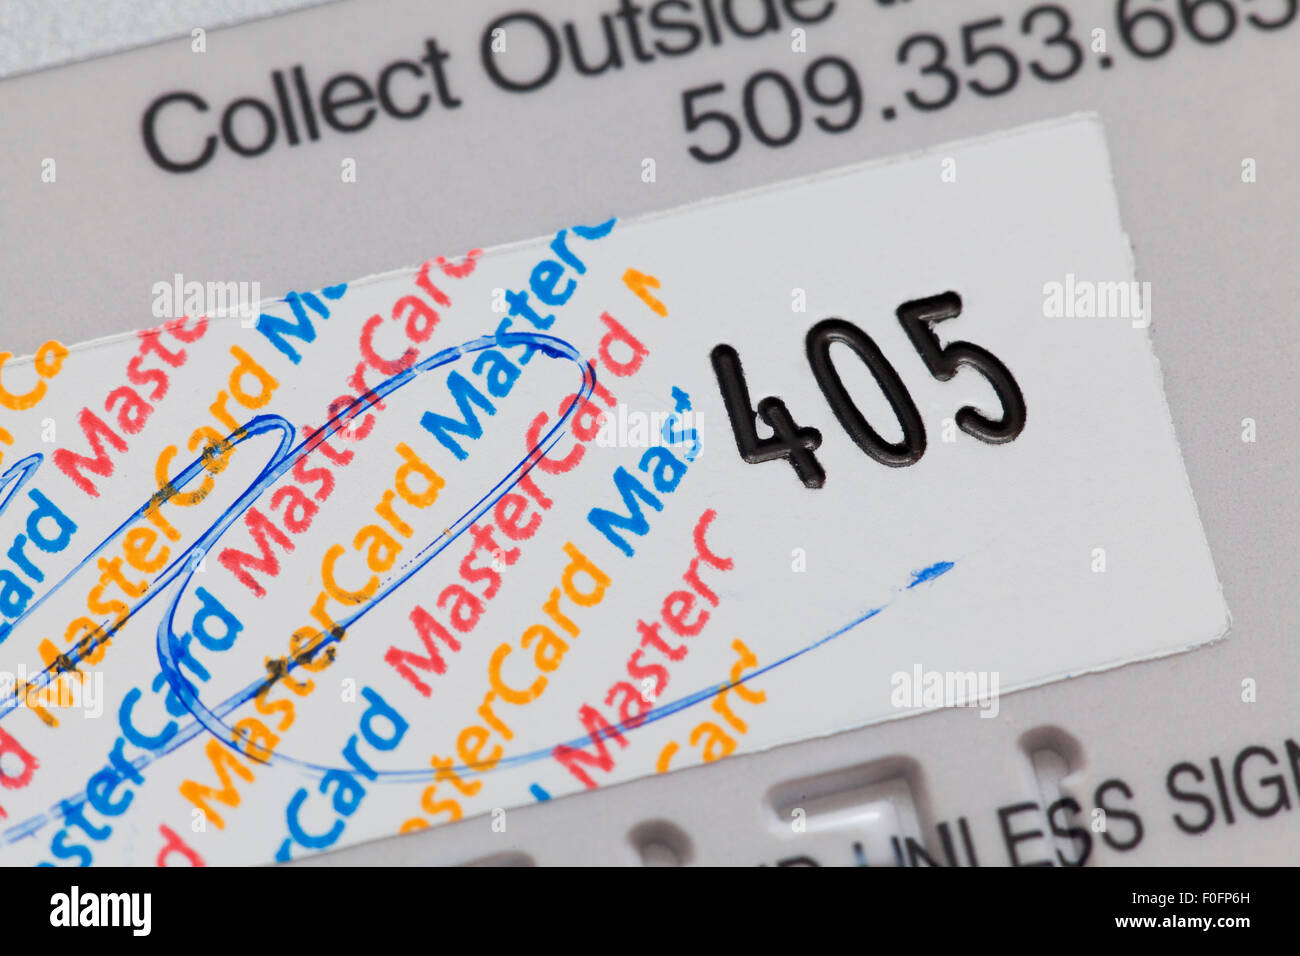 Mastercard Codice Di Sicurezza Della Carta Di Credito Usa